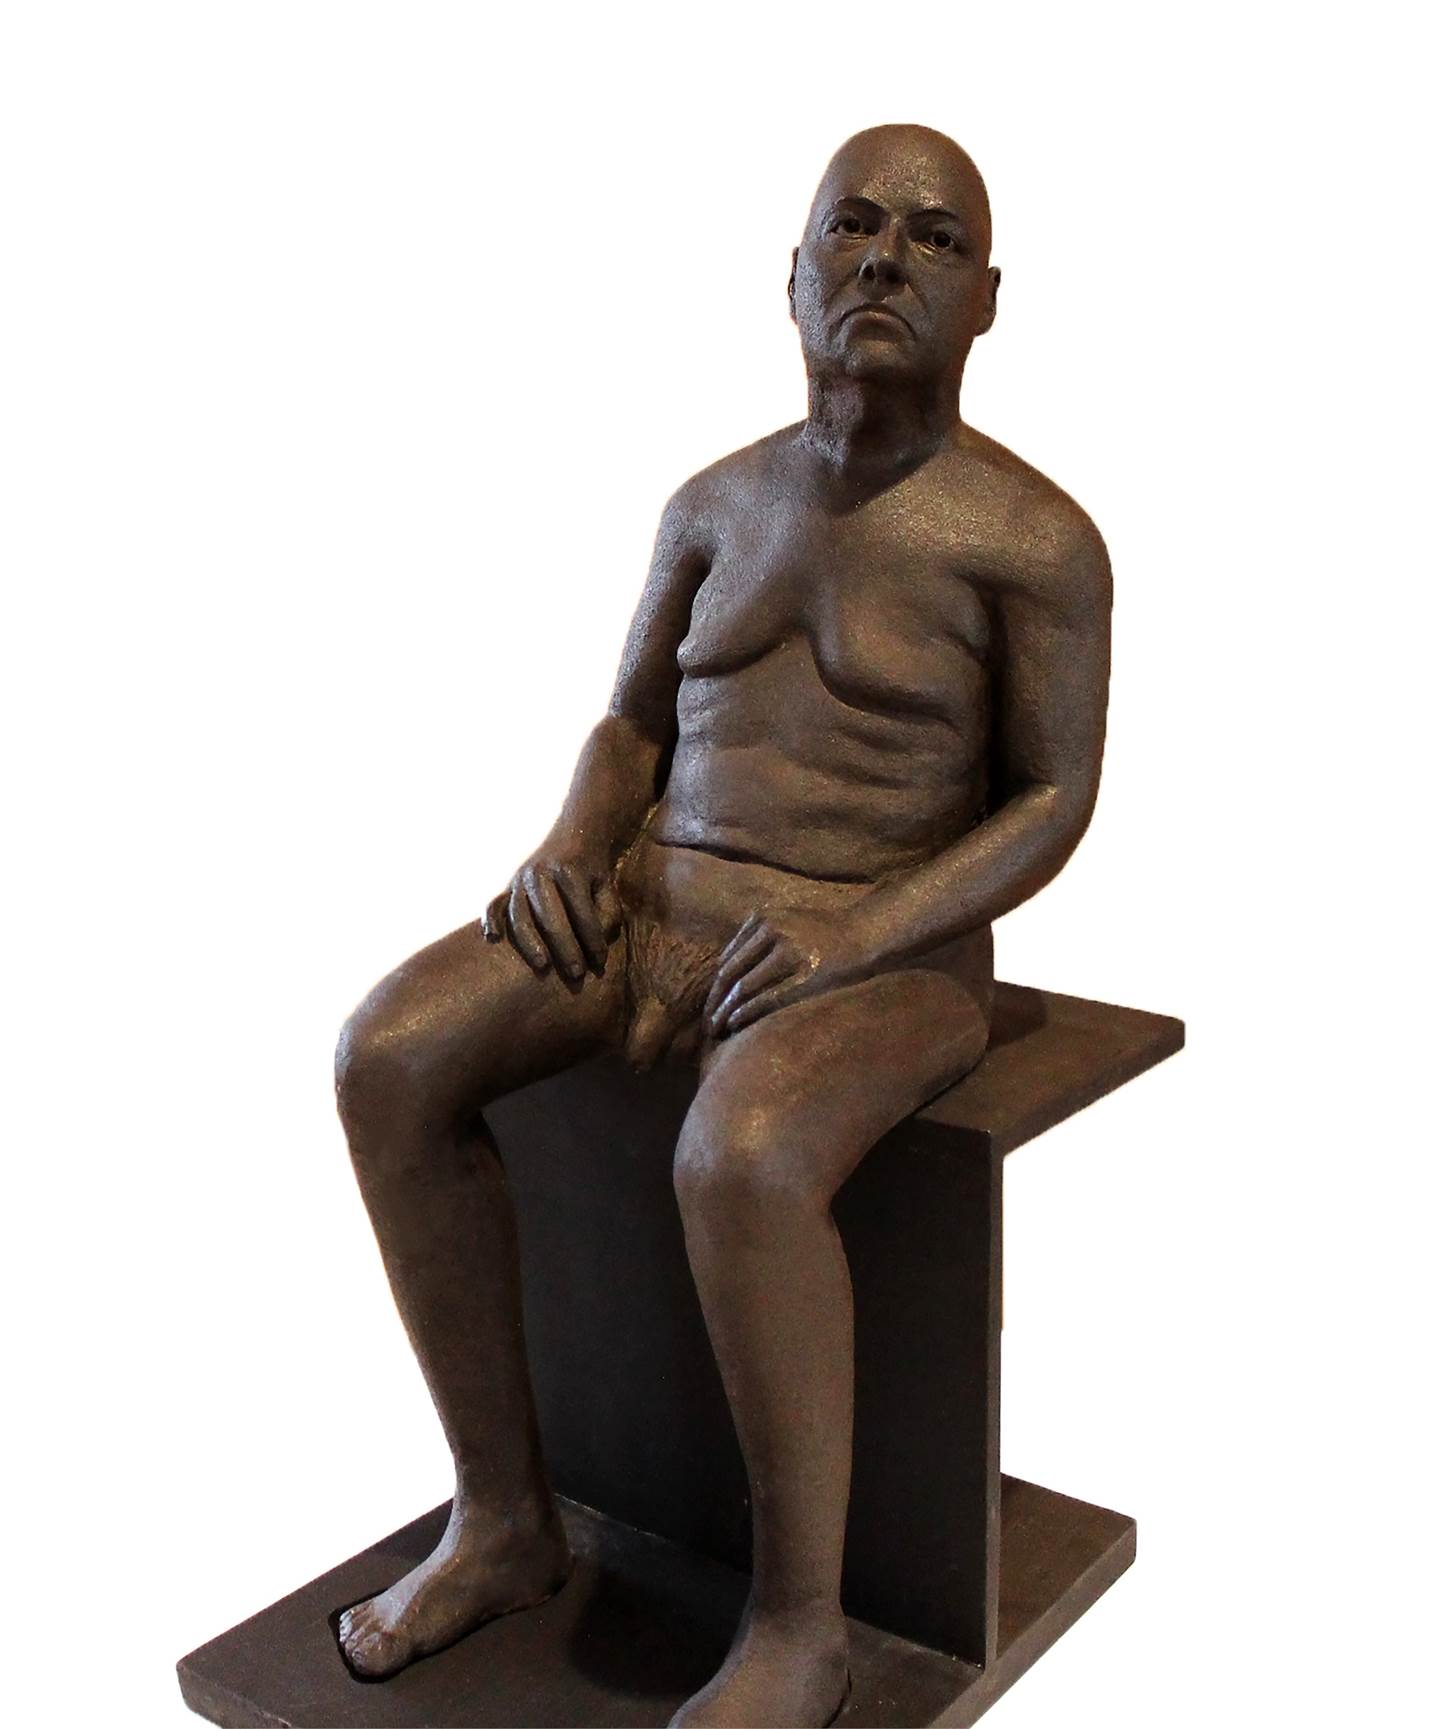 SR. JOSÉ, original Body Ceramic Sculpture by Ana Sousa Santos